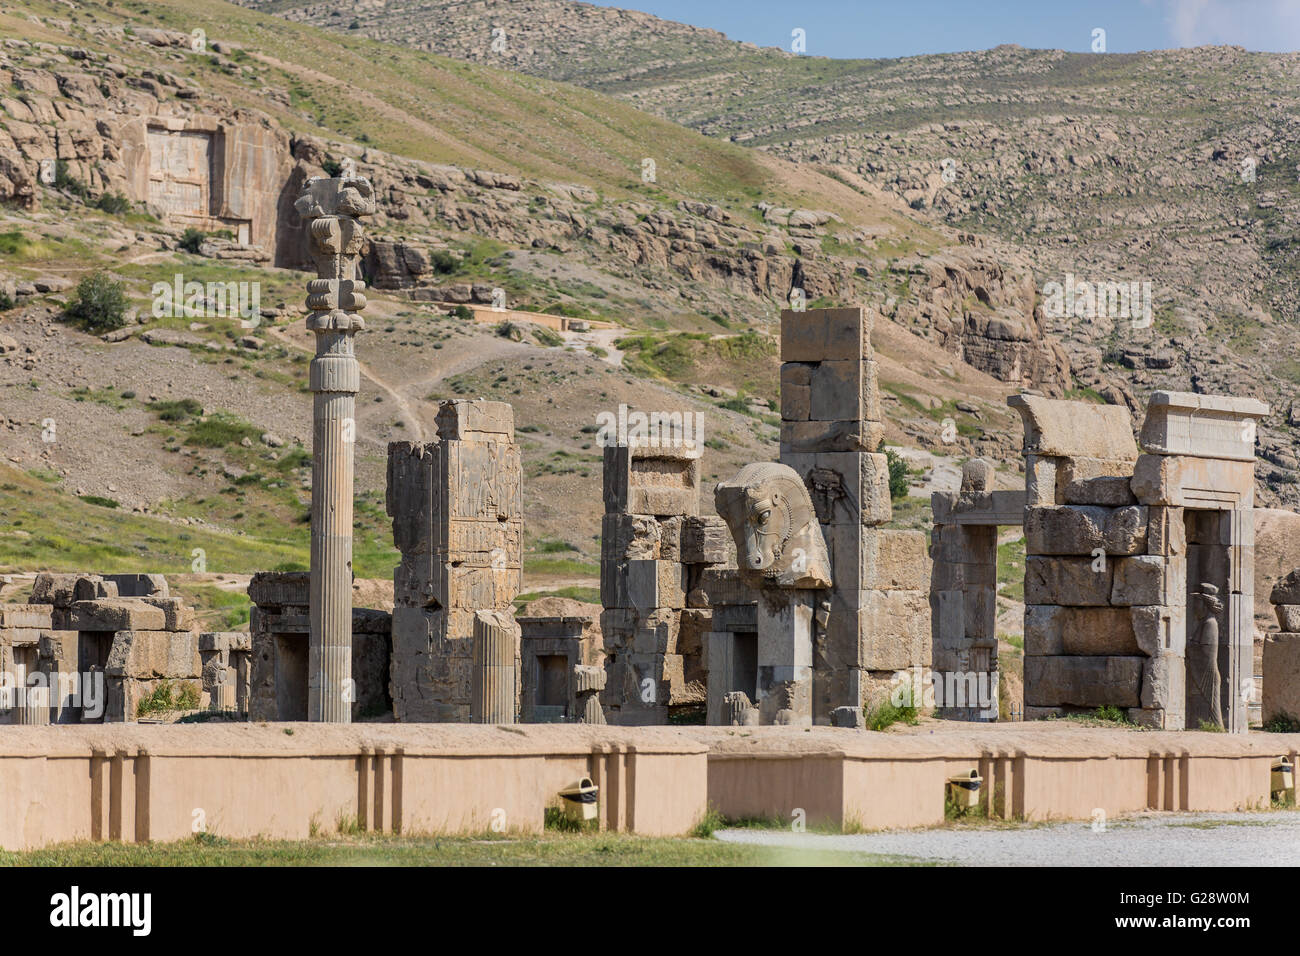 Ancient ruin city of Persepolis near Shiraz Iran Stock Photo